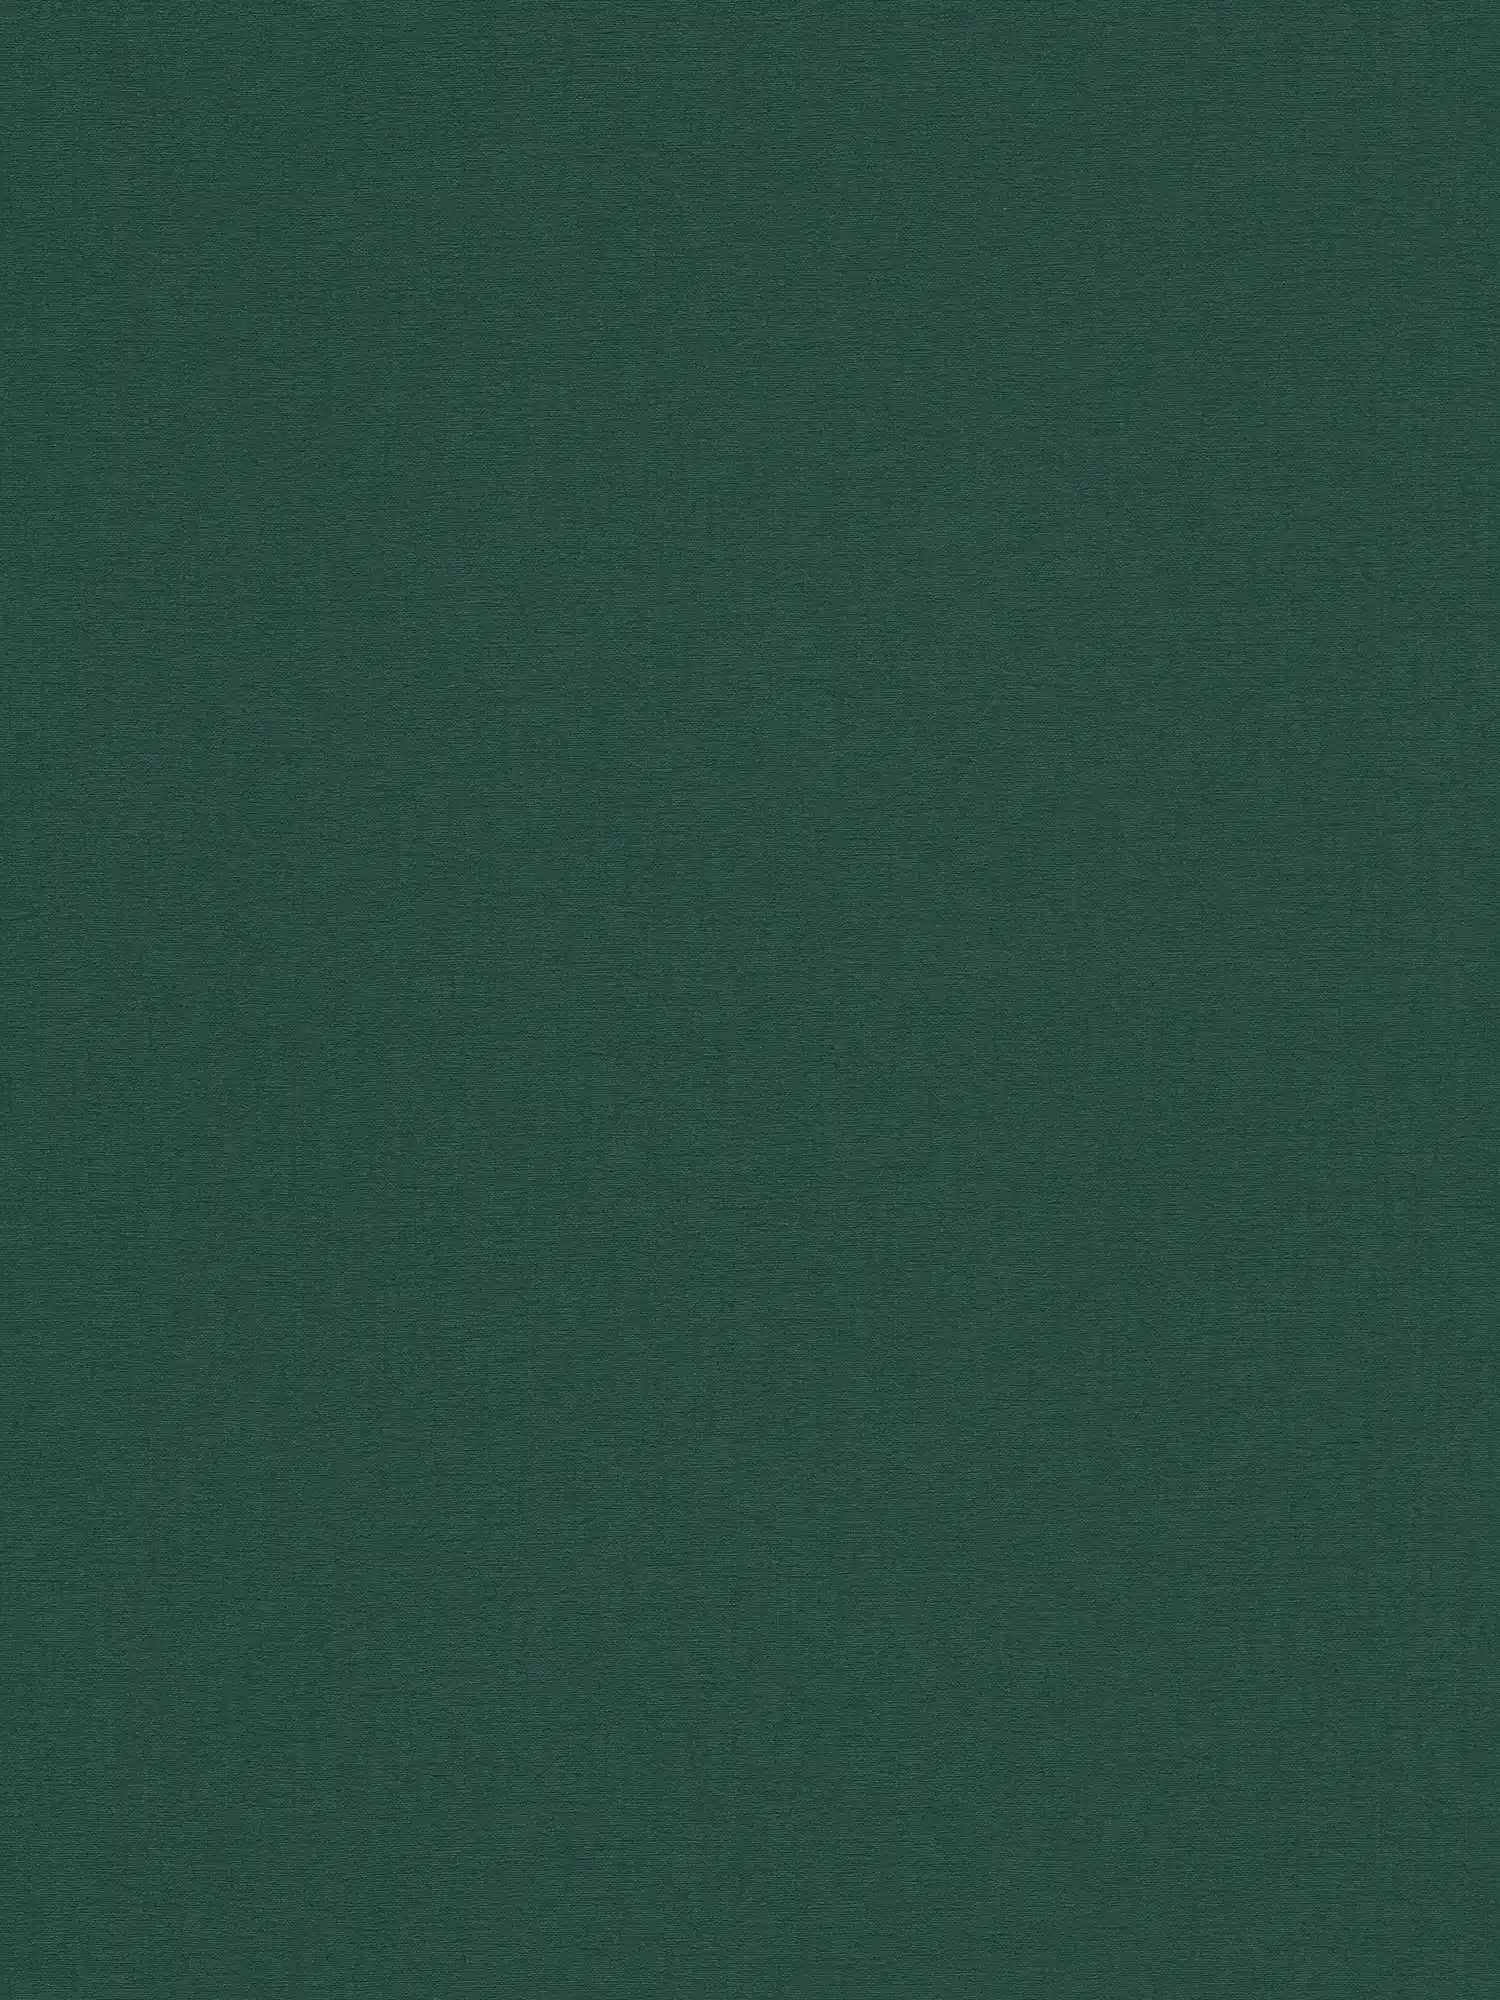 Plain wallpaper with matt textile texture - green, dark green
